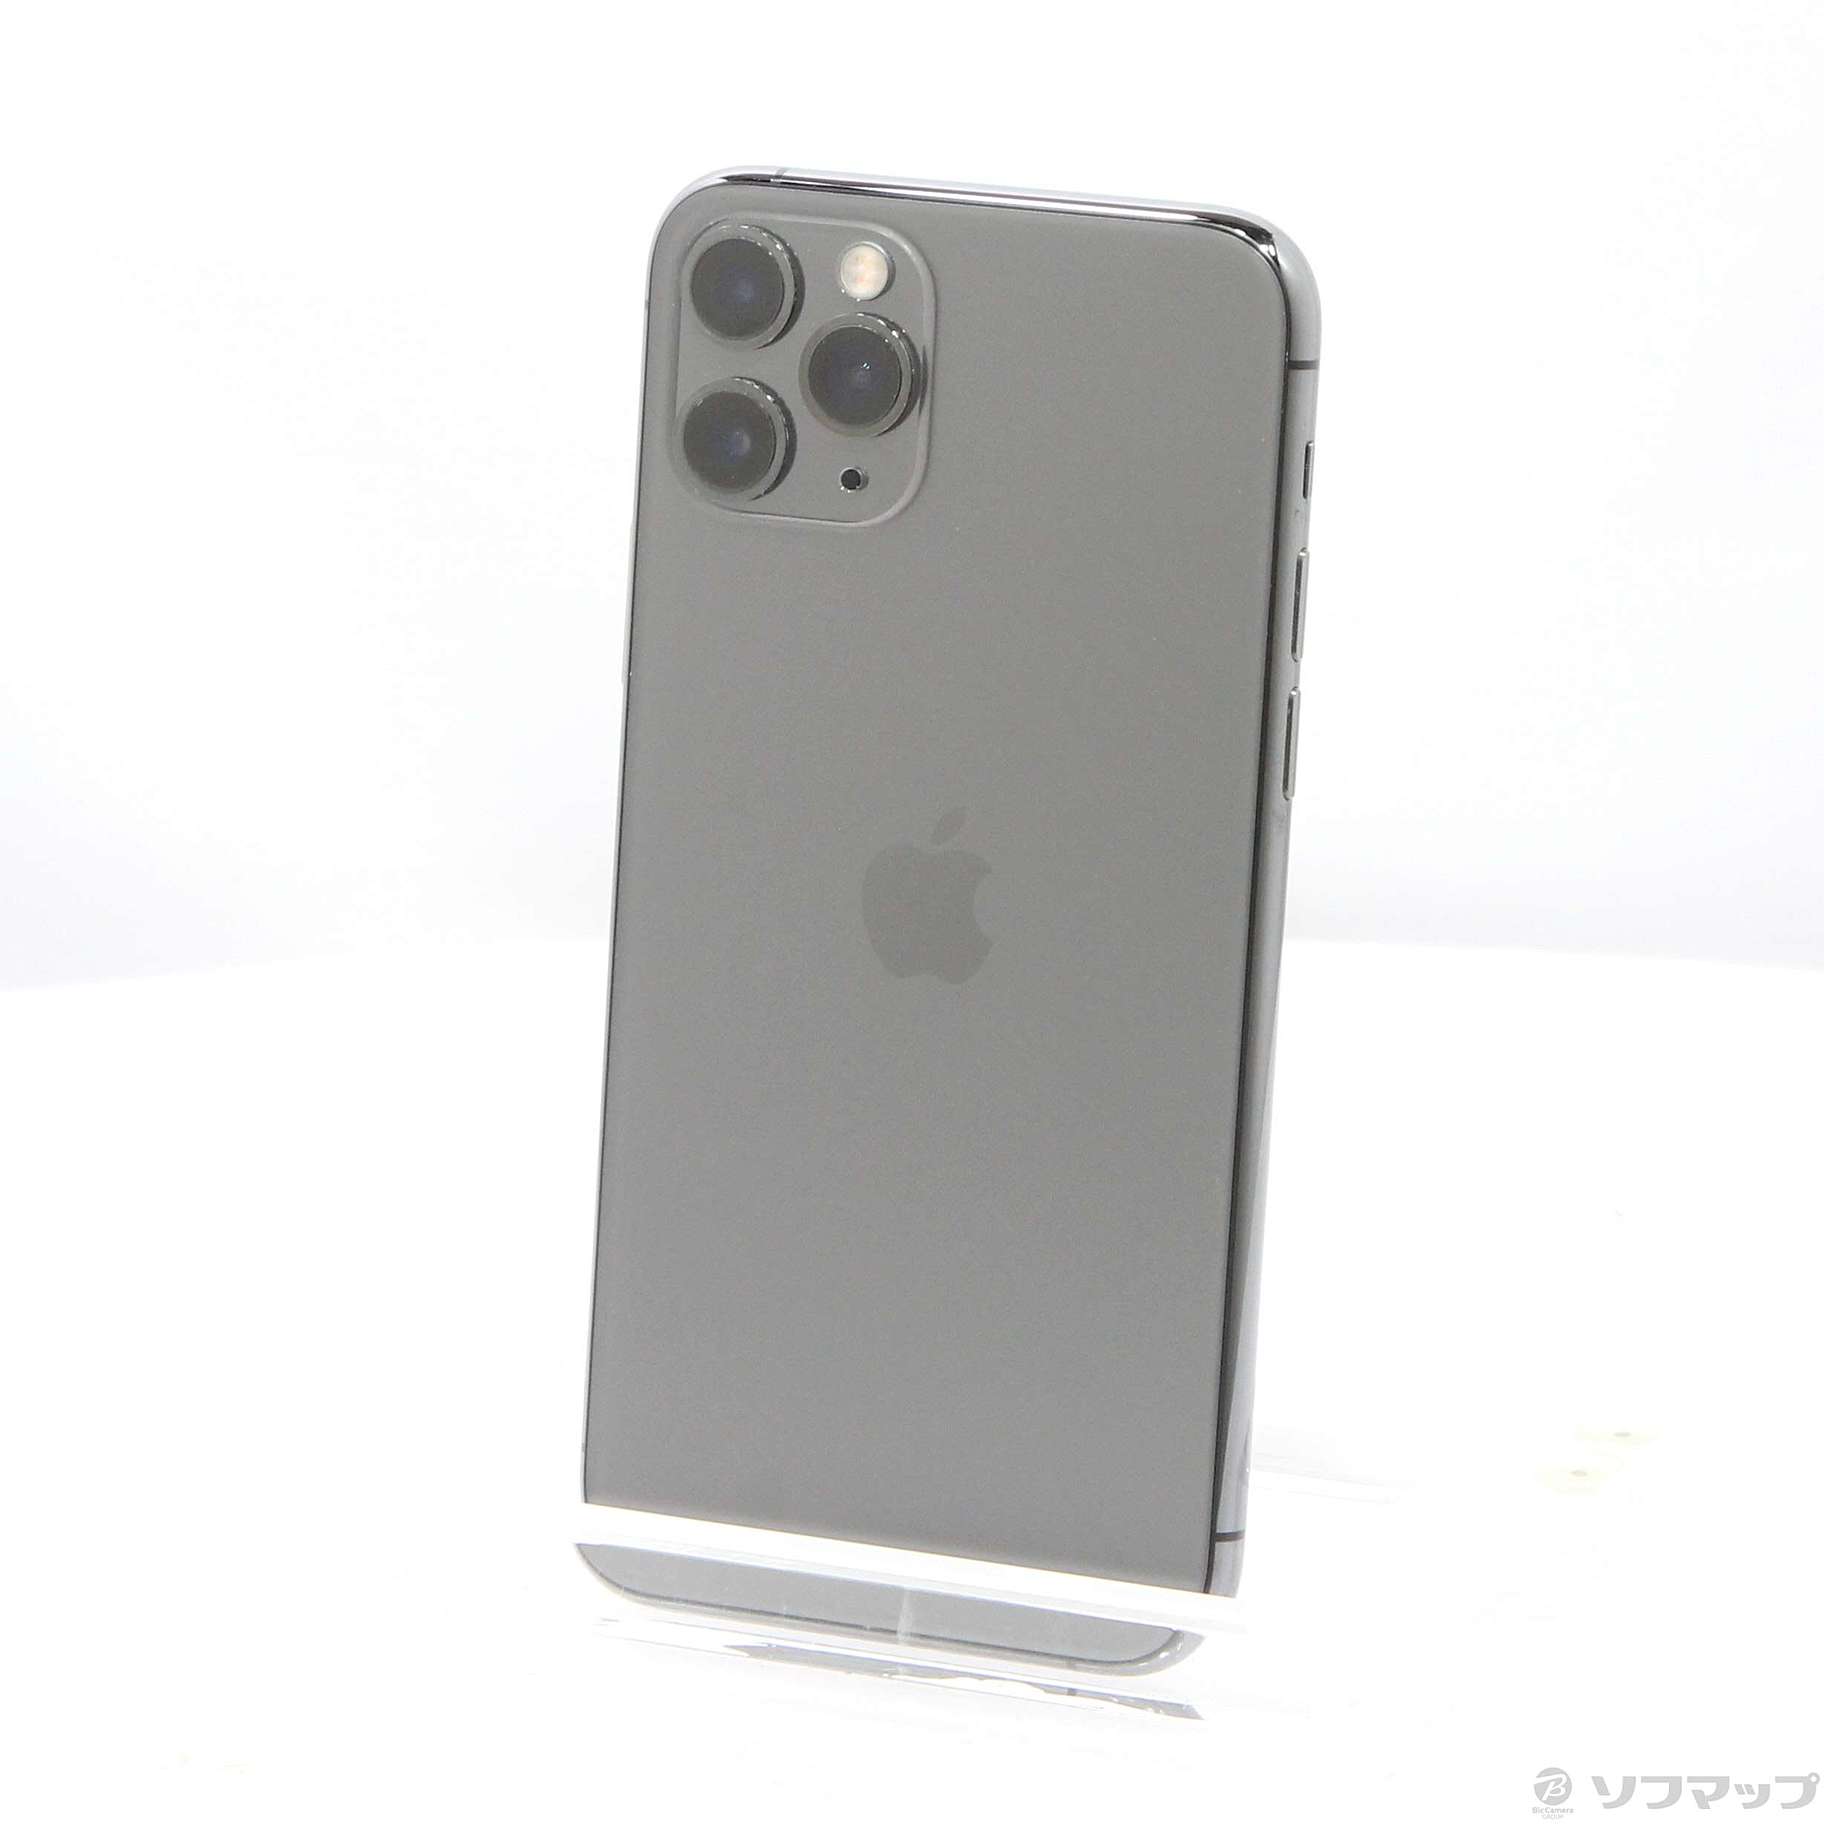 アップル iPhone11 Pro 64GB スペースグレイ simフリー